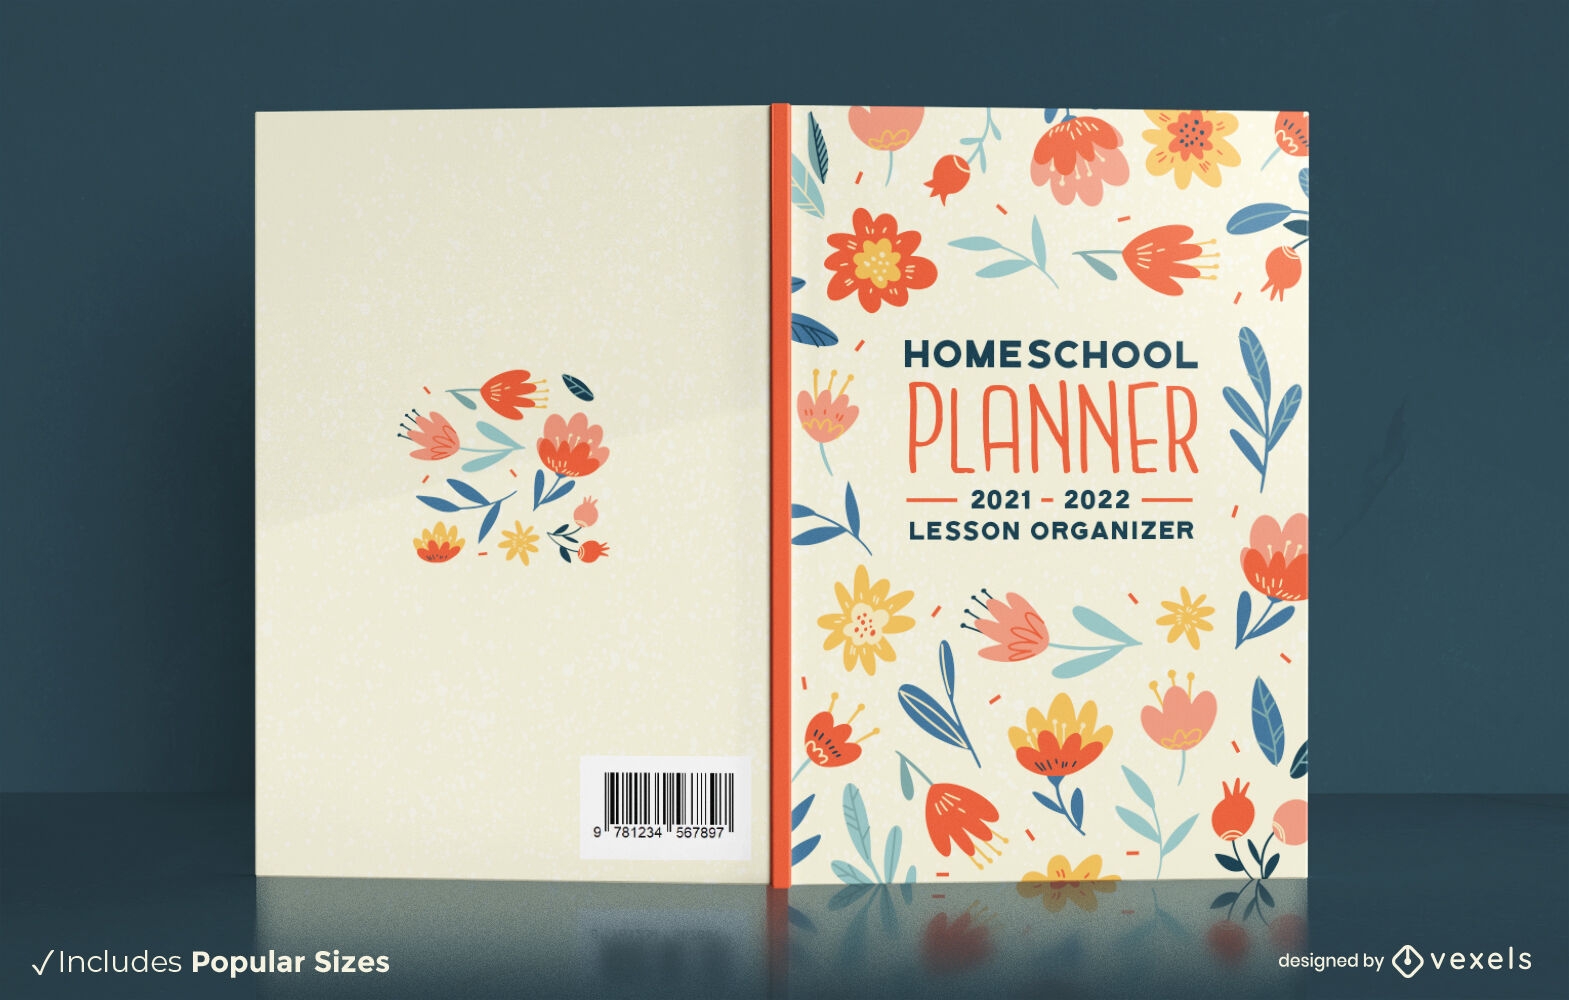 Dise?o floral de la portada del libro del planificador de educaci?n en el hogar